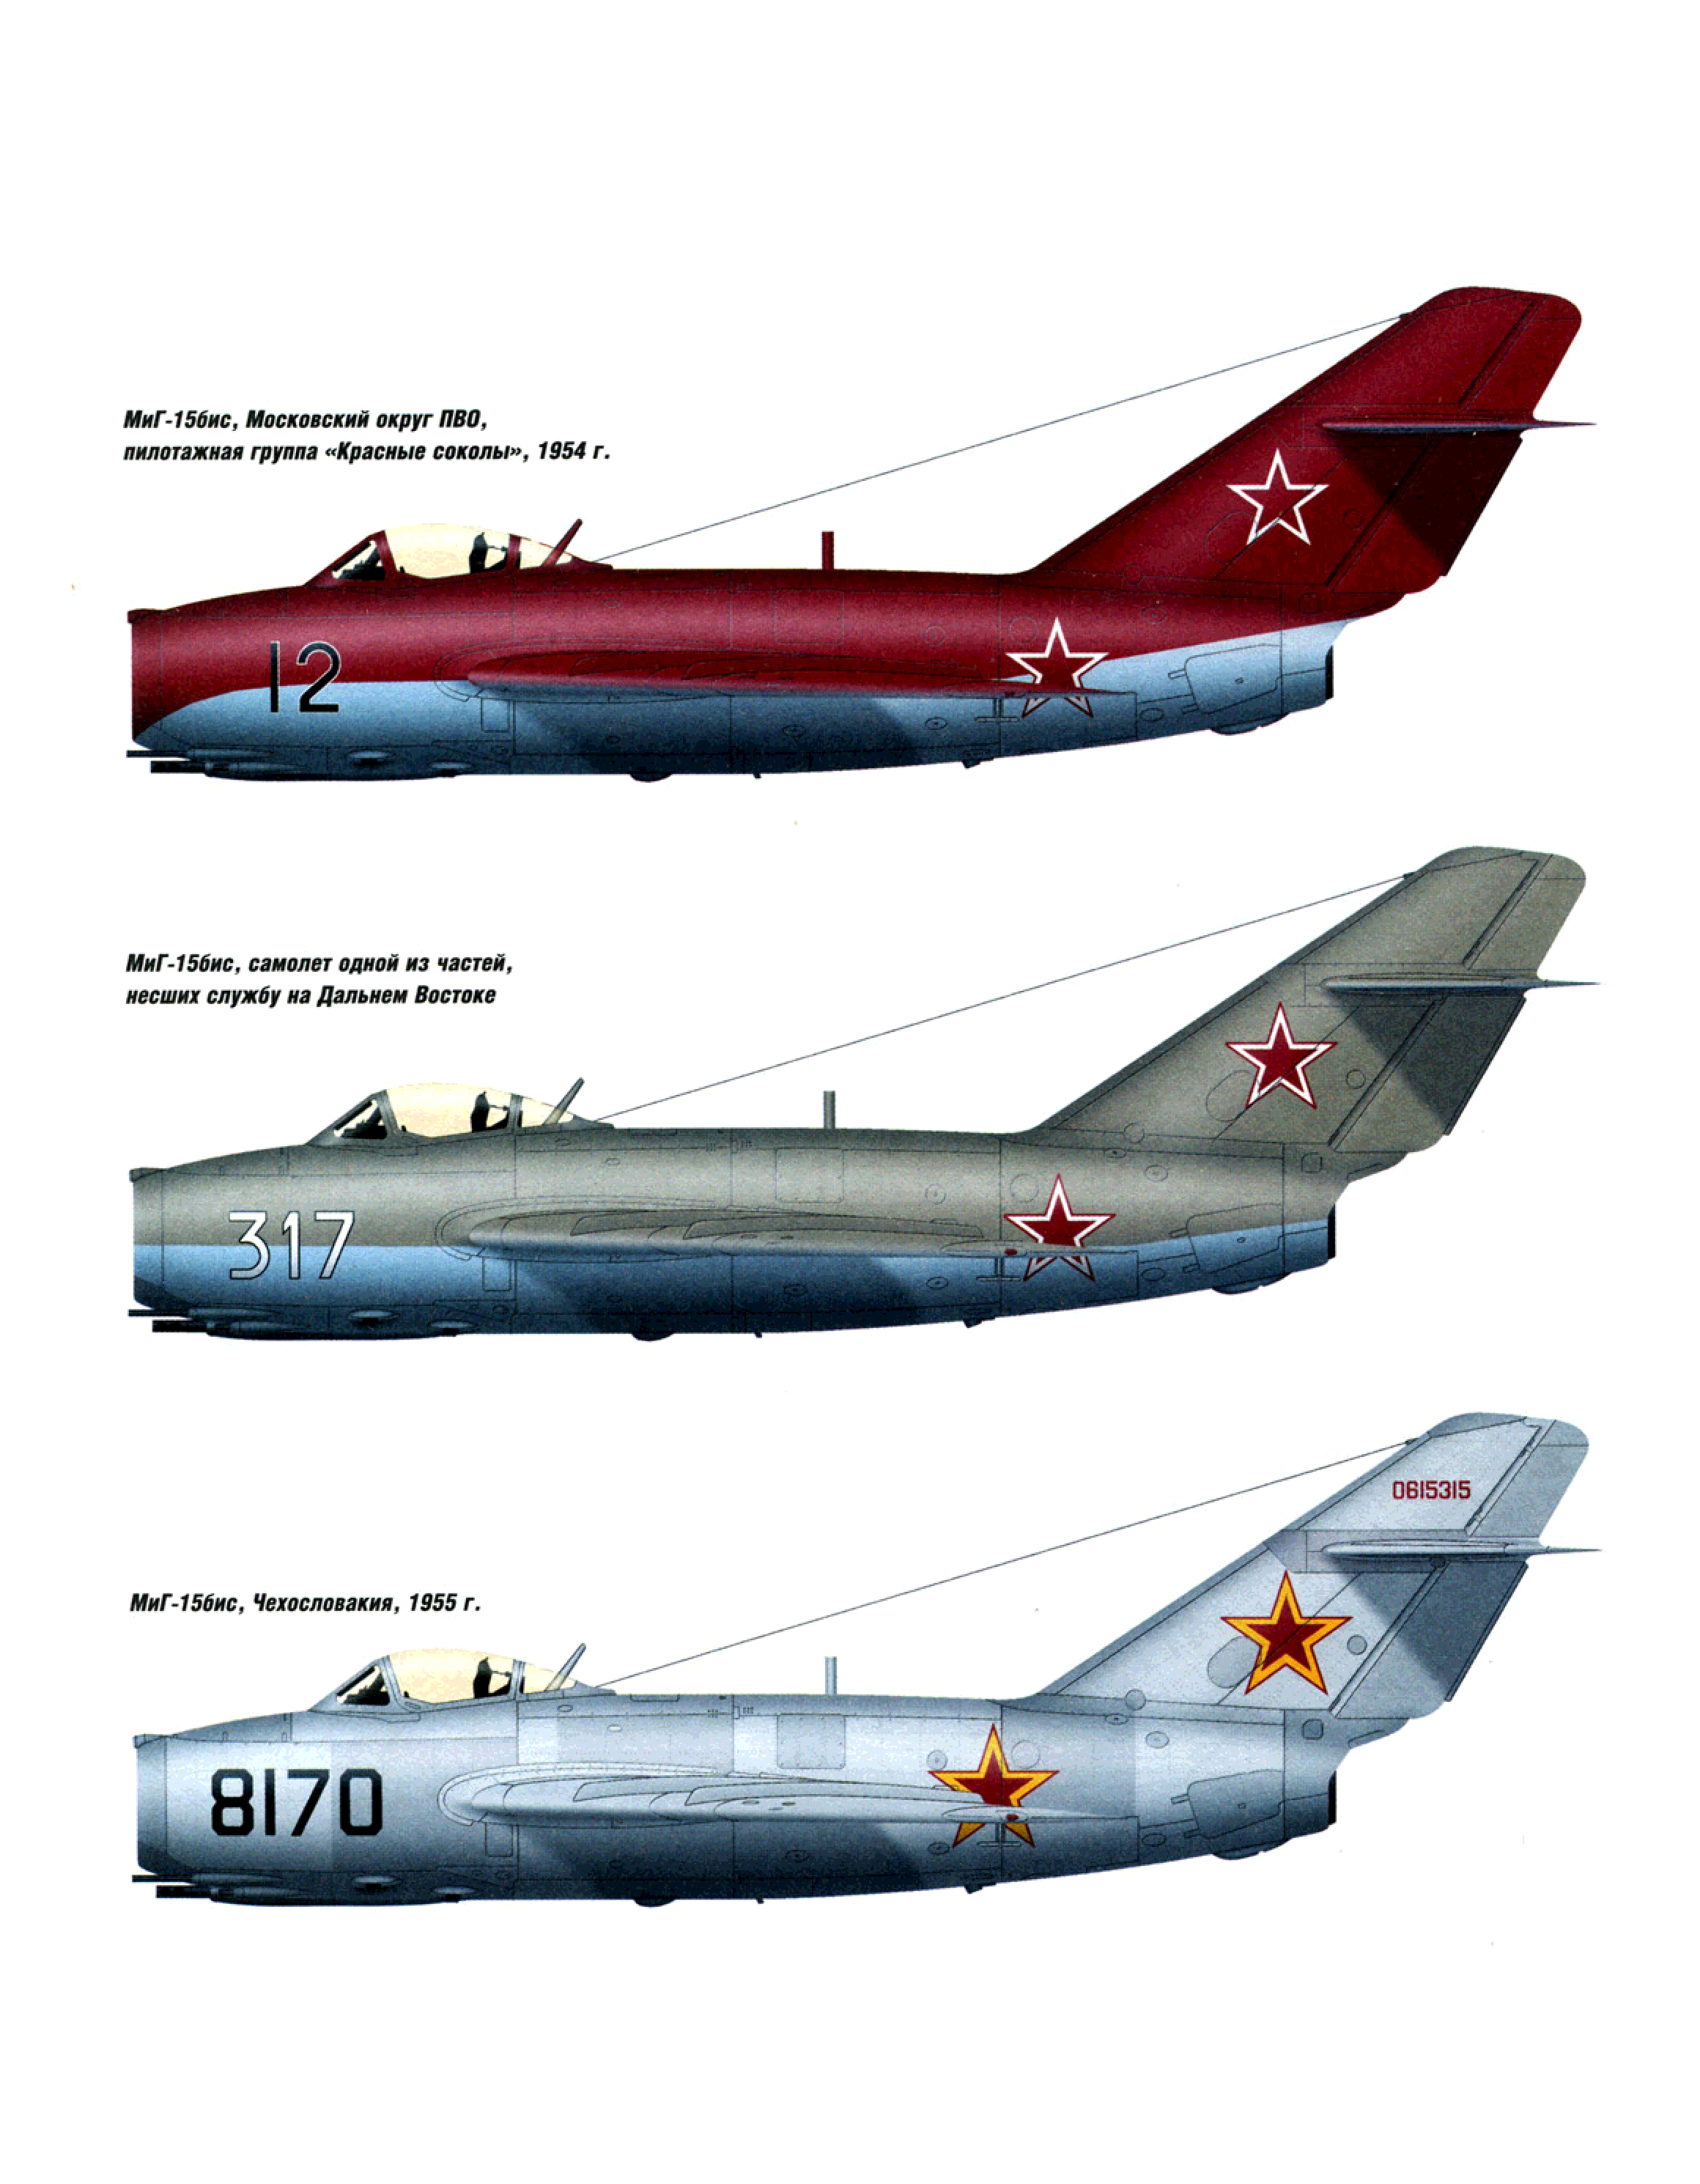 Миг-15. реактивный самолет ссср, который шокировал запад